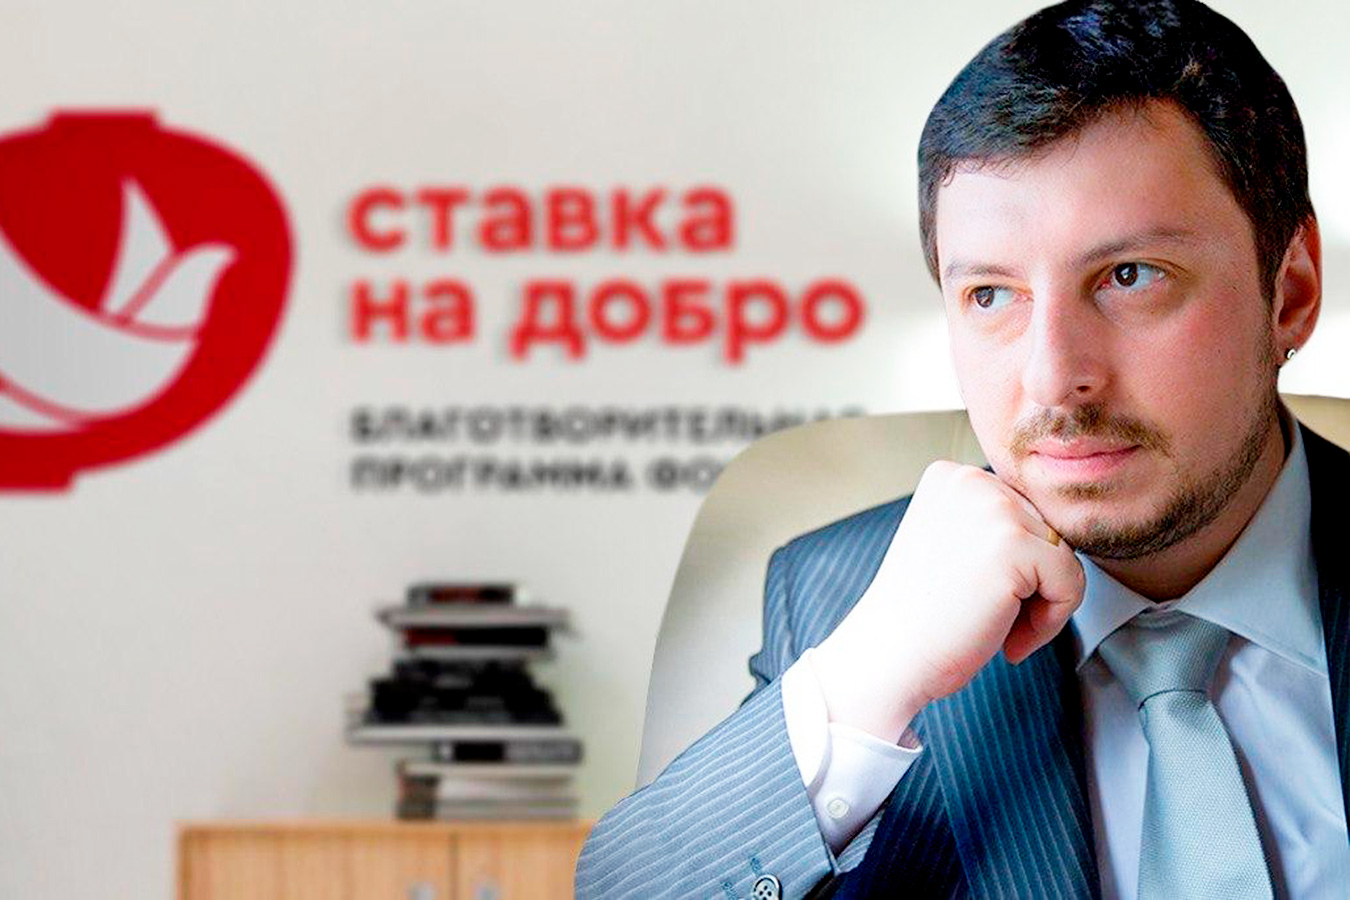 Никита Иванов: формальная благотворительность становится бессмысленной